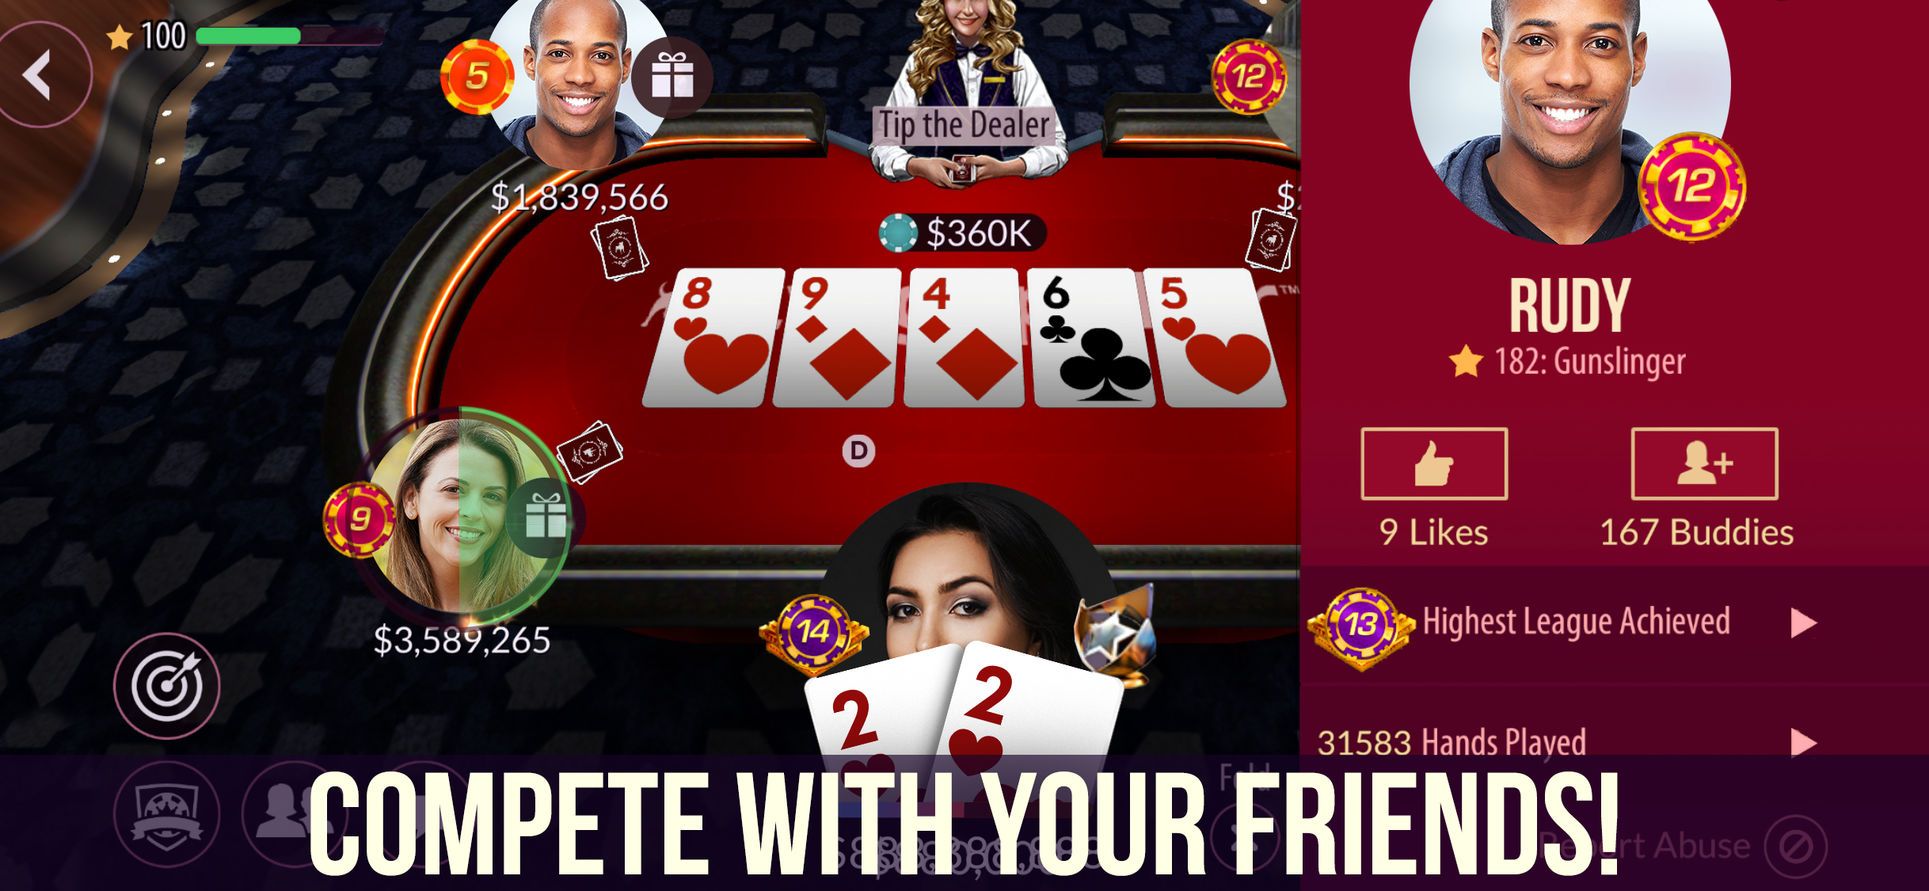 Zynga Poker Ipad How To Add Friends - newcaddy